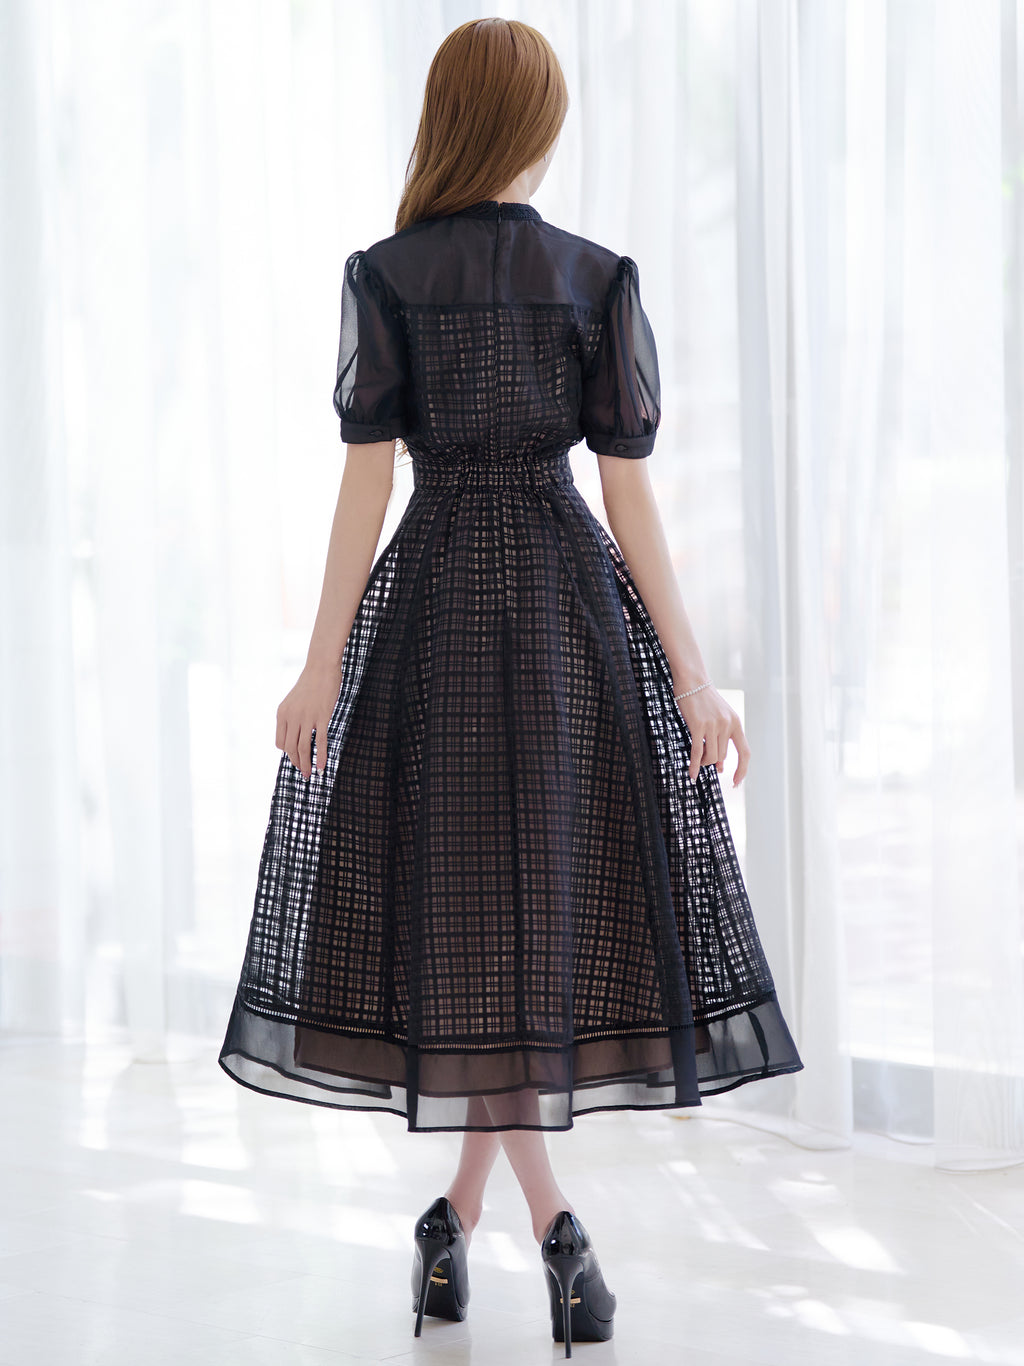 Elegance noir dress | エミリアウィズ 公式オンラインストア